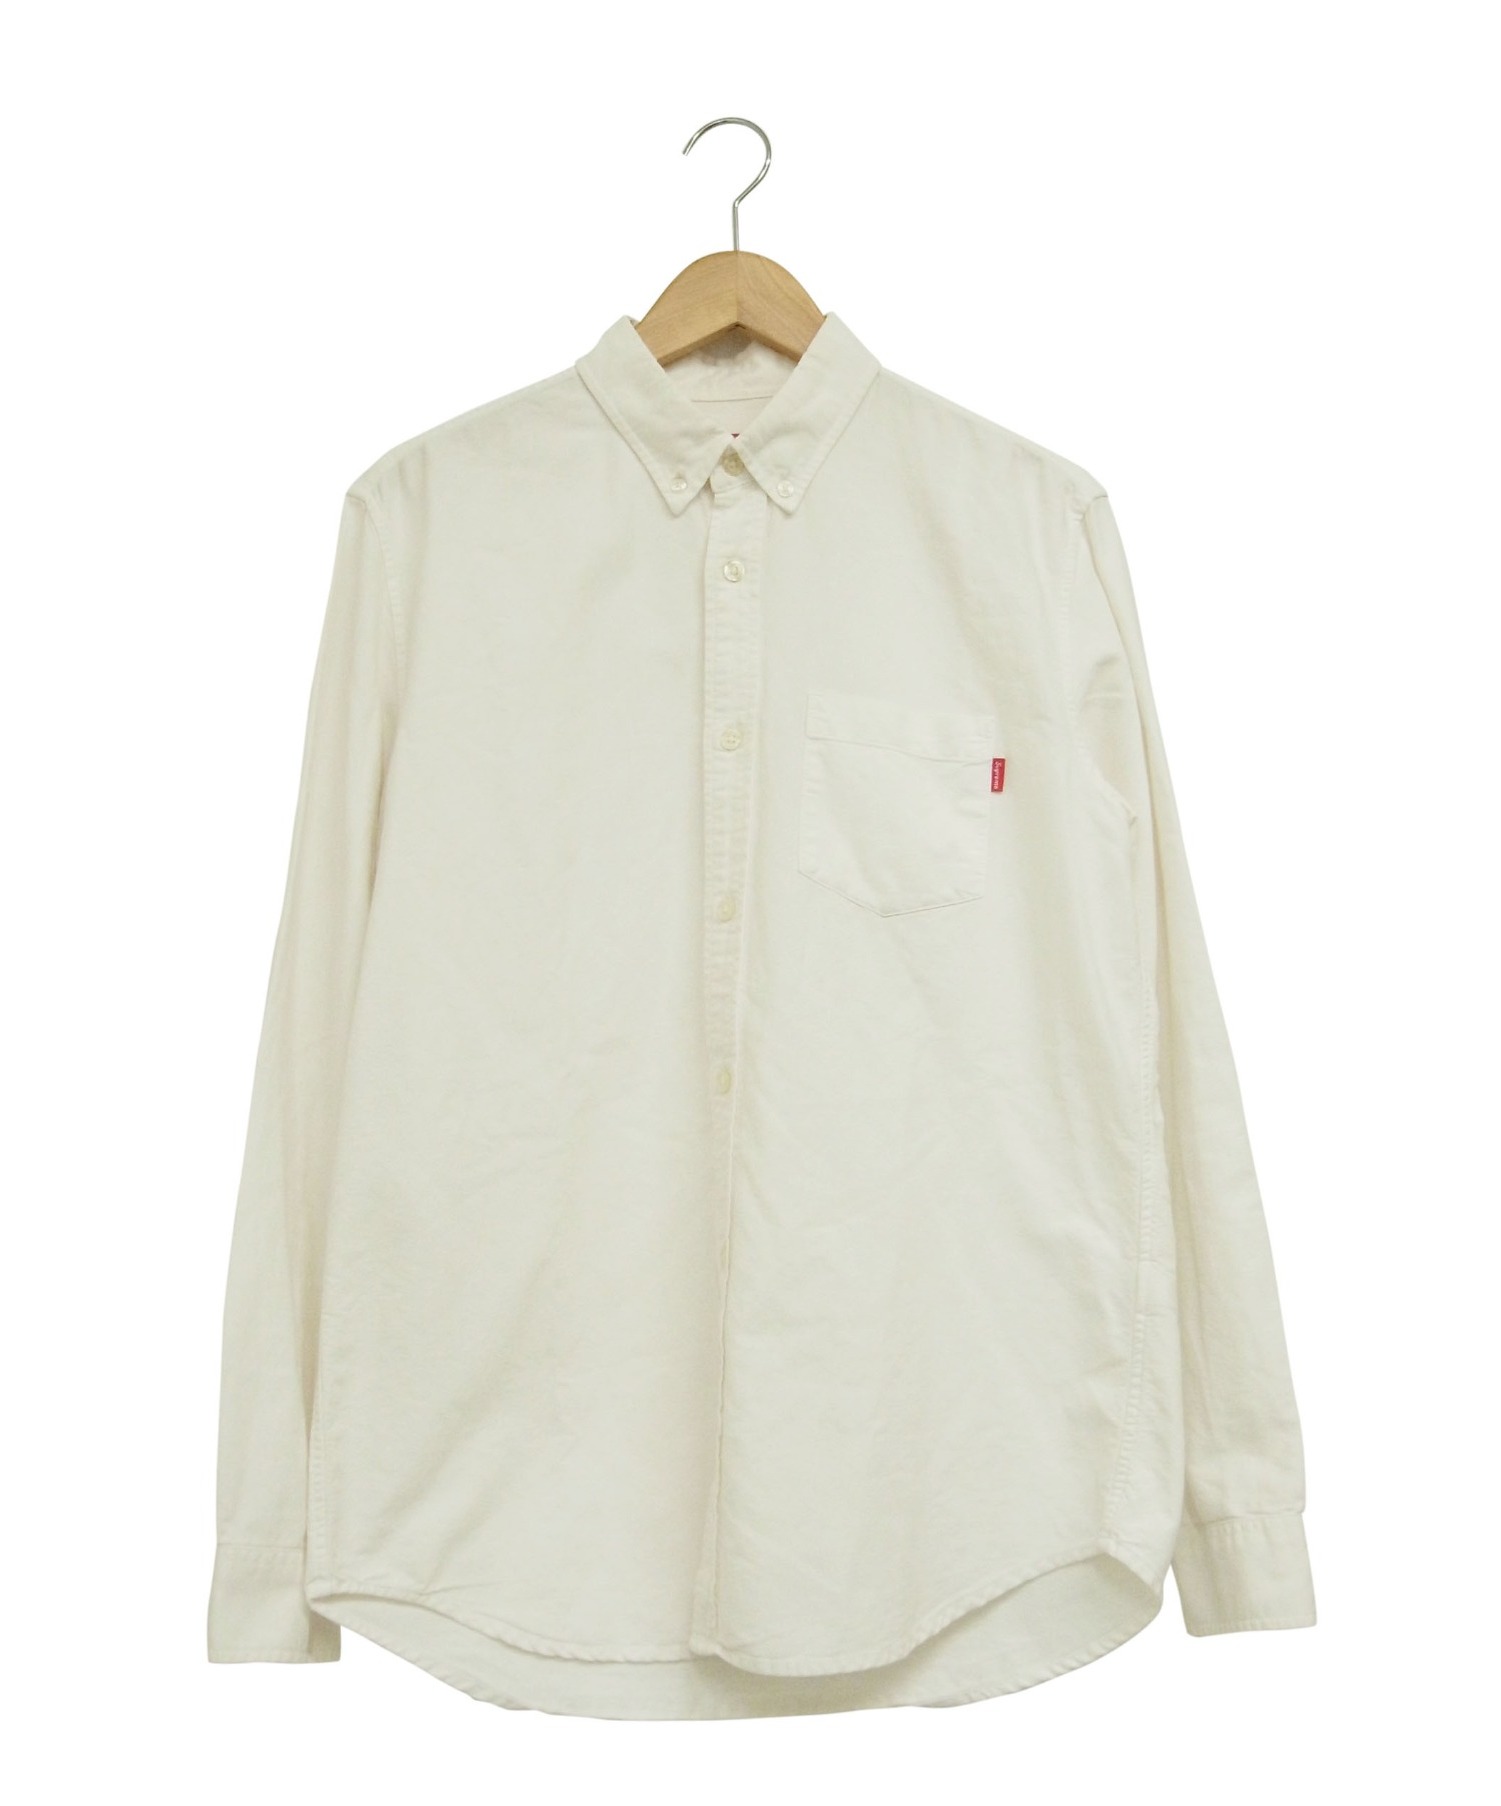 Supreme (シュプリーム) オックスフォードシャツ サイズ:M Oxford Shirt